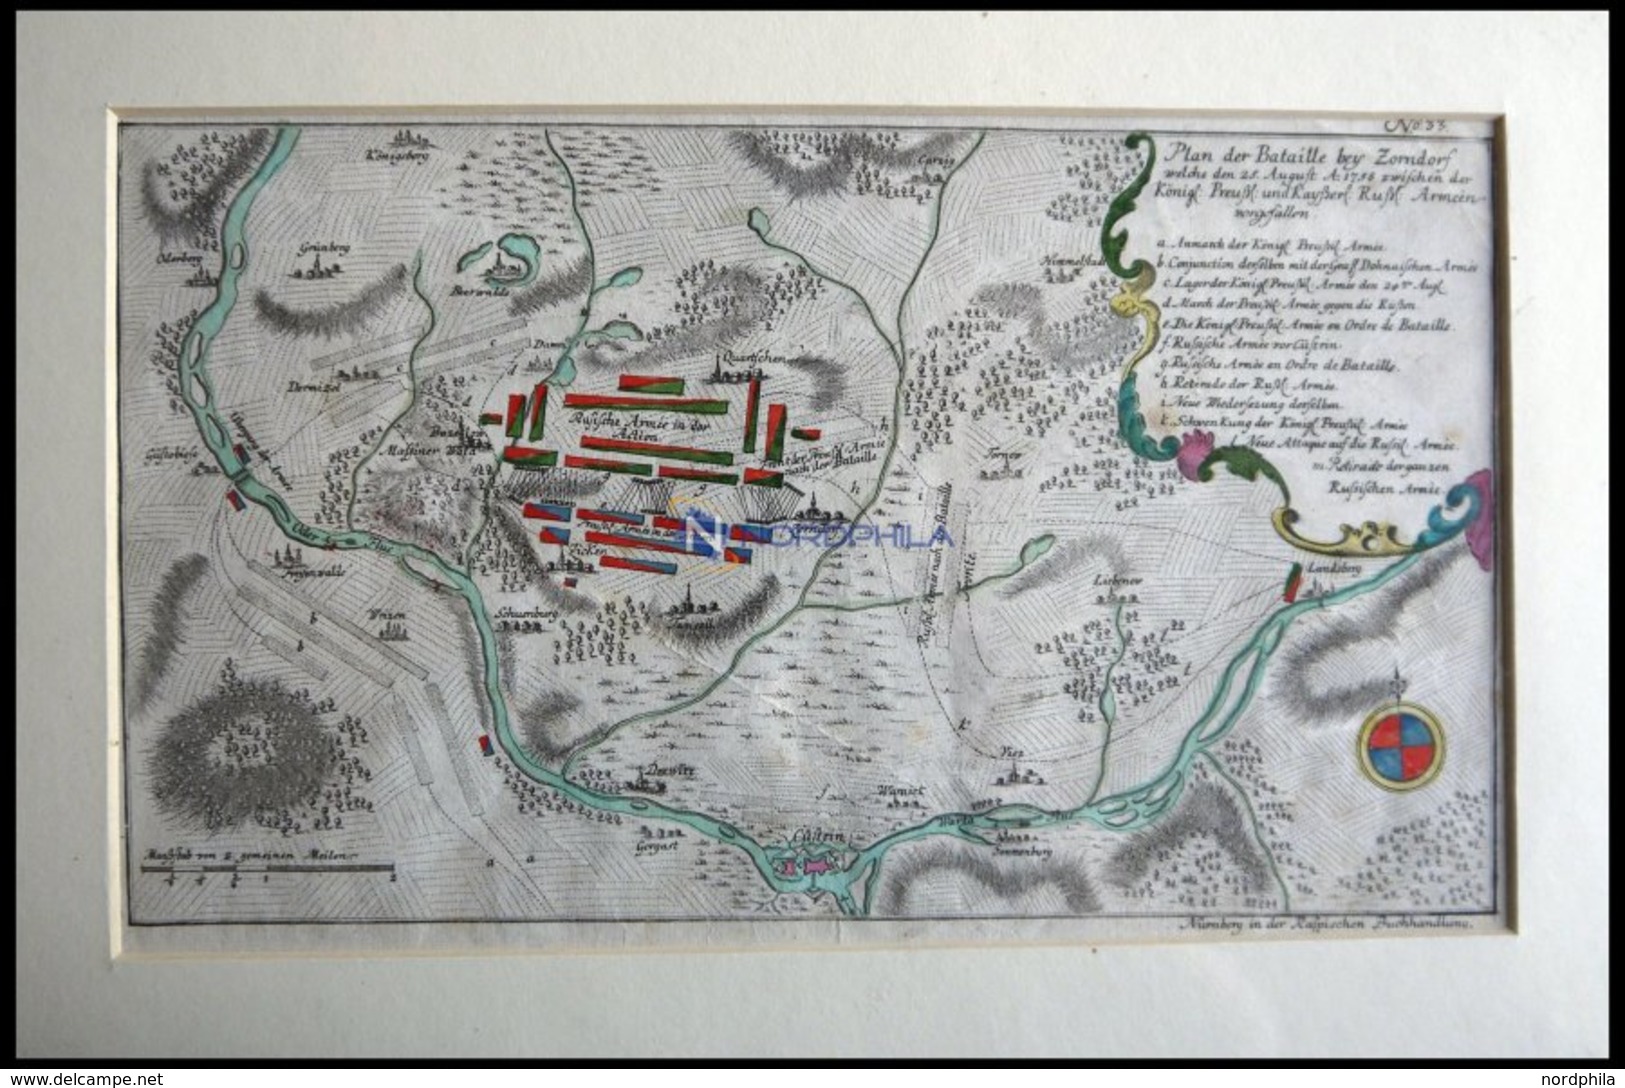 ZORNDORF, Schlacht Vom 25.8.1758 Mit Umgebung, Altkolorierter Kupferstich Von Ben Jochai Bei Raspische Buchhandlung 1760 - Litografía